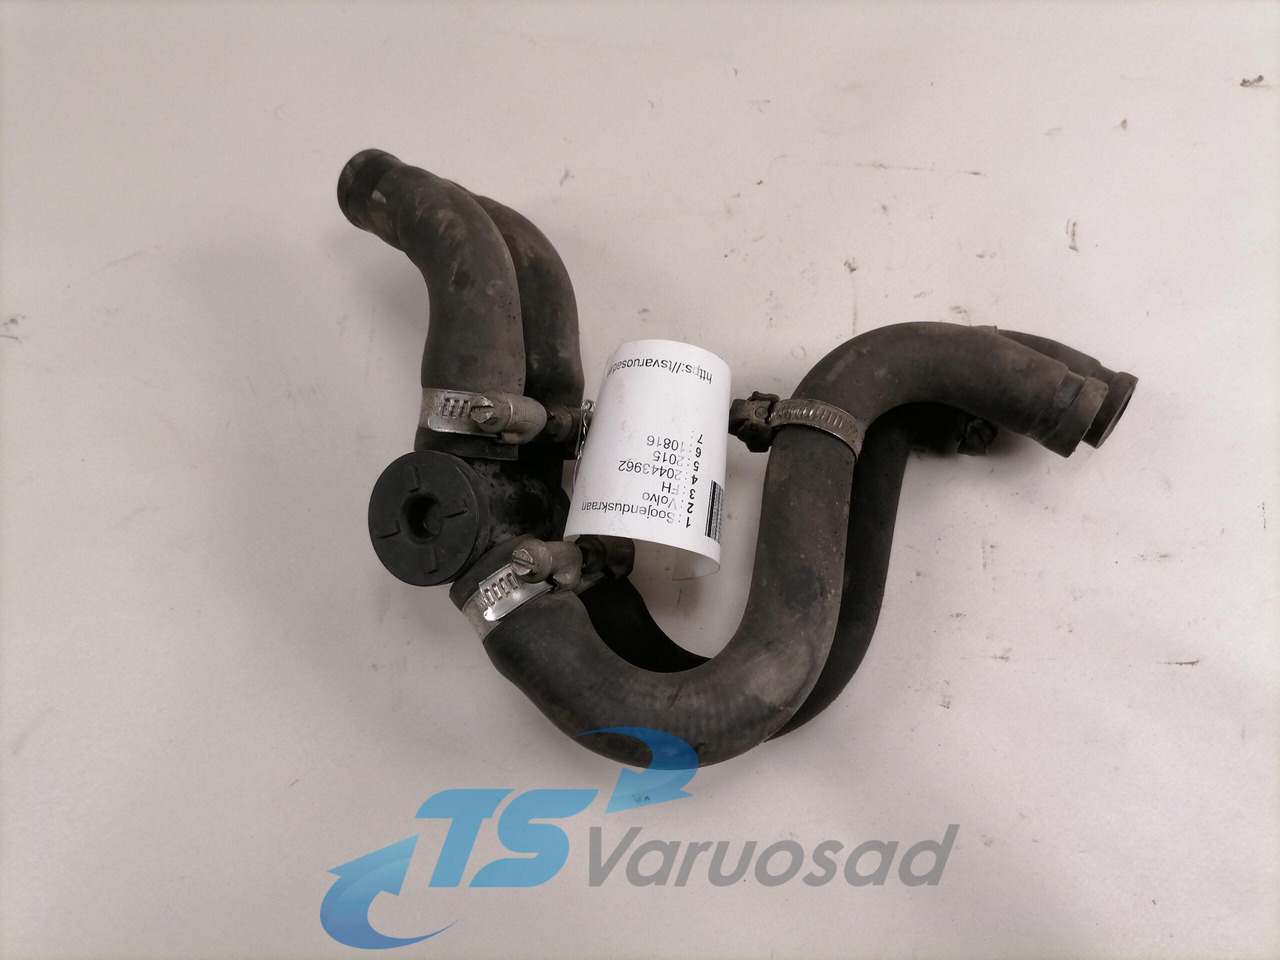 난방/ 환기 트럭 용 Volvo Water valve 20443962 : 사진 2